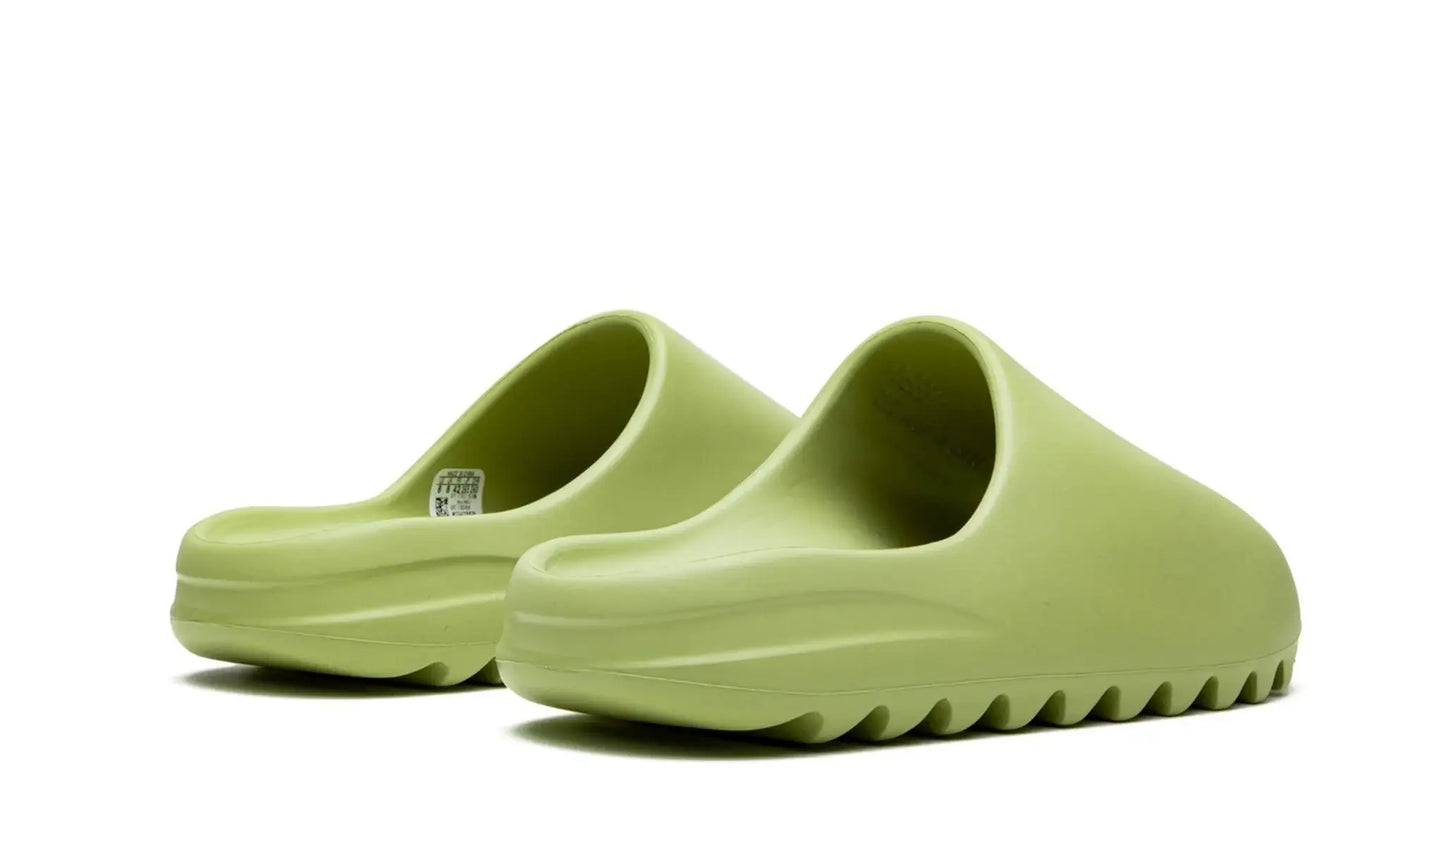 Adidas Yeezy Slide "Resin" Verde